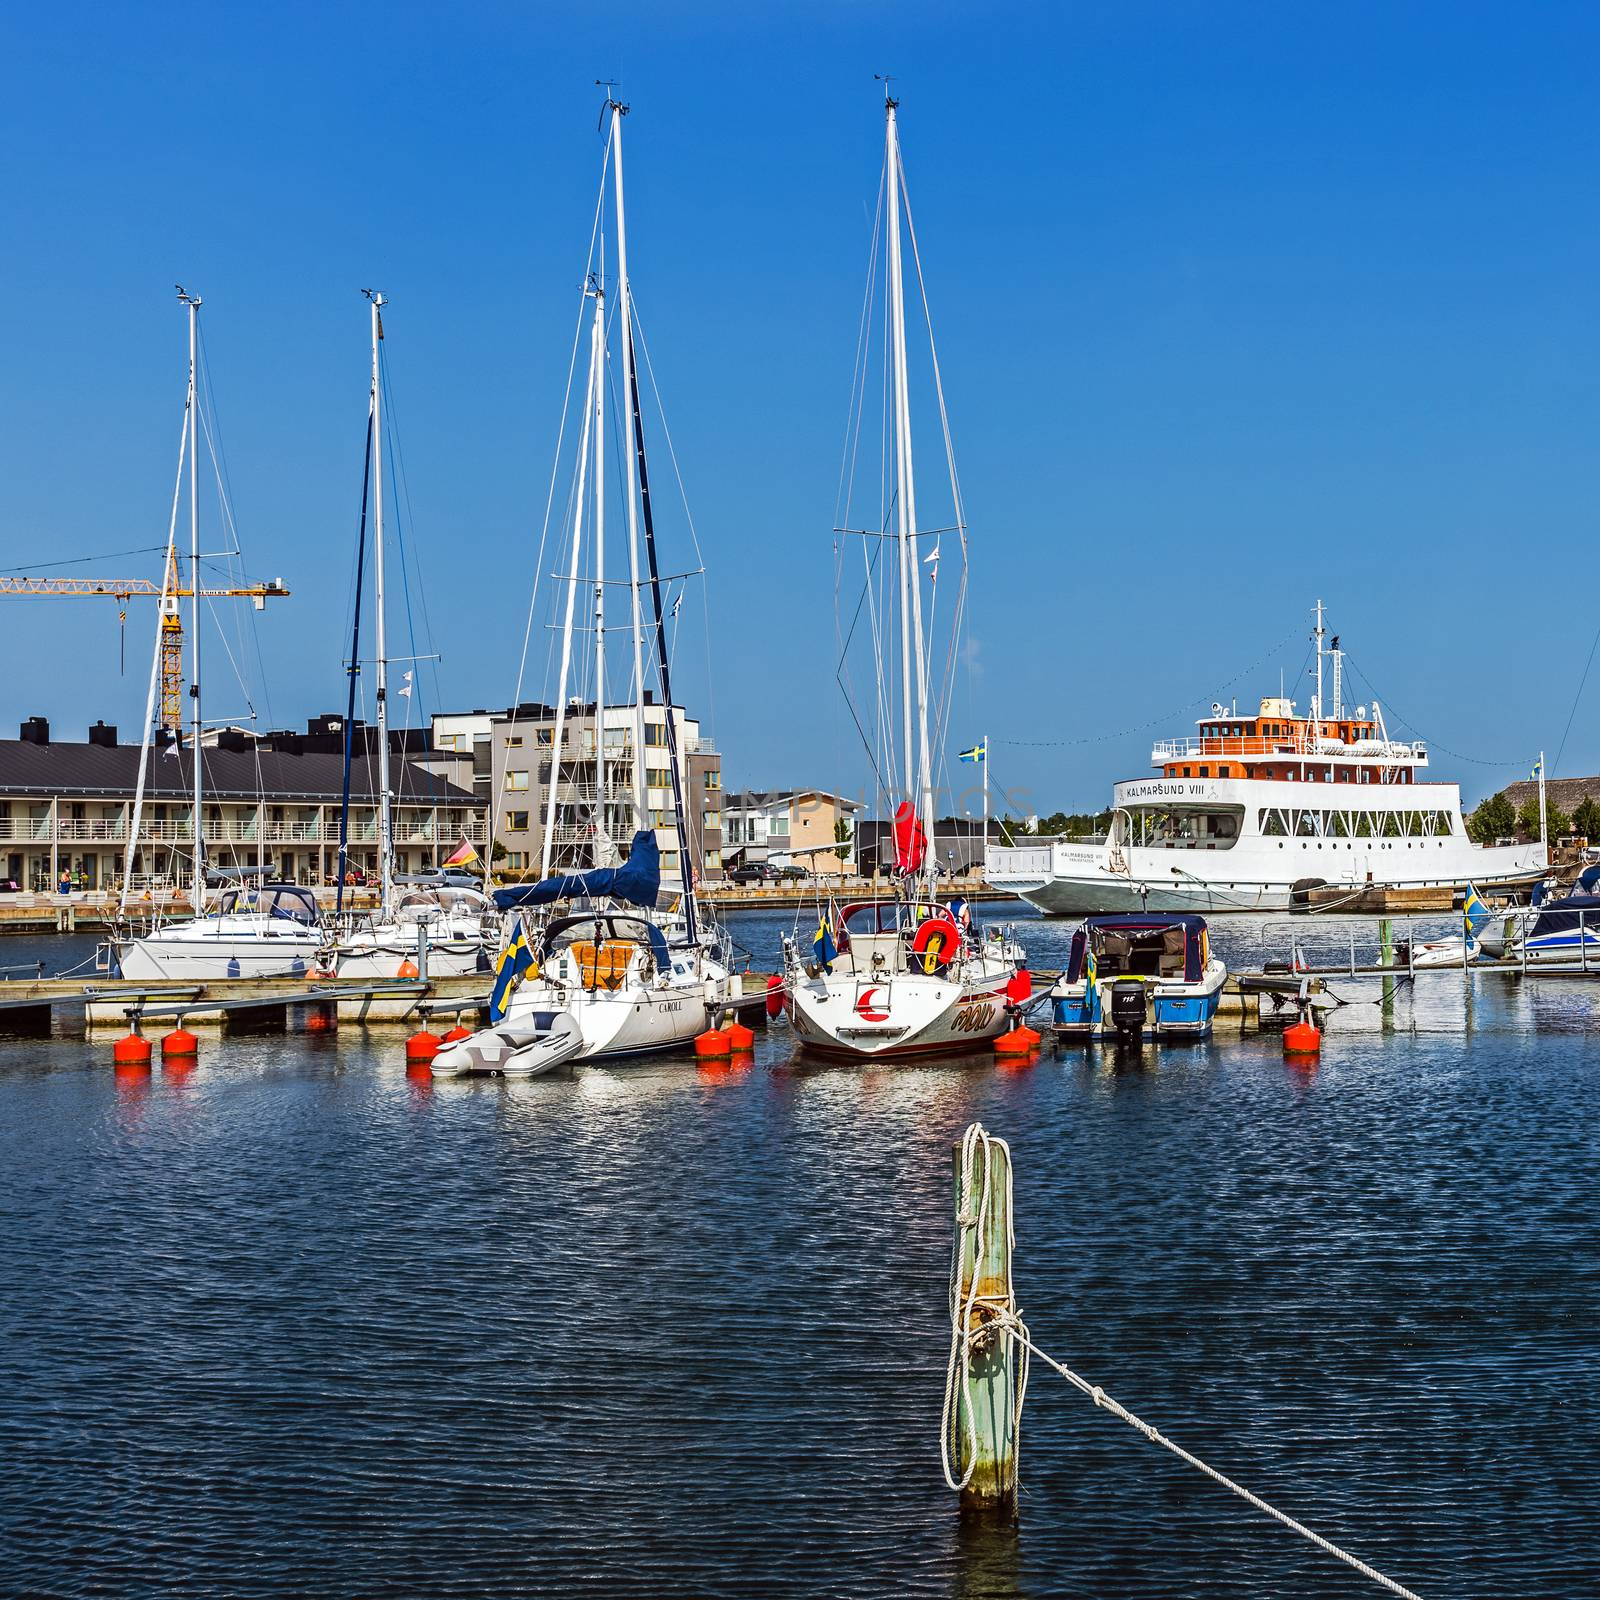 Scenes from the marina in Farjestaden by pawel_szczepanski